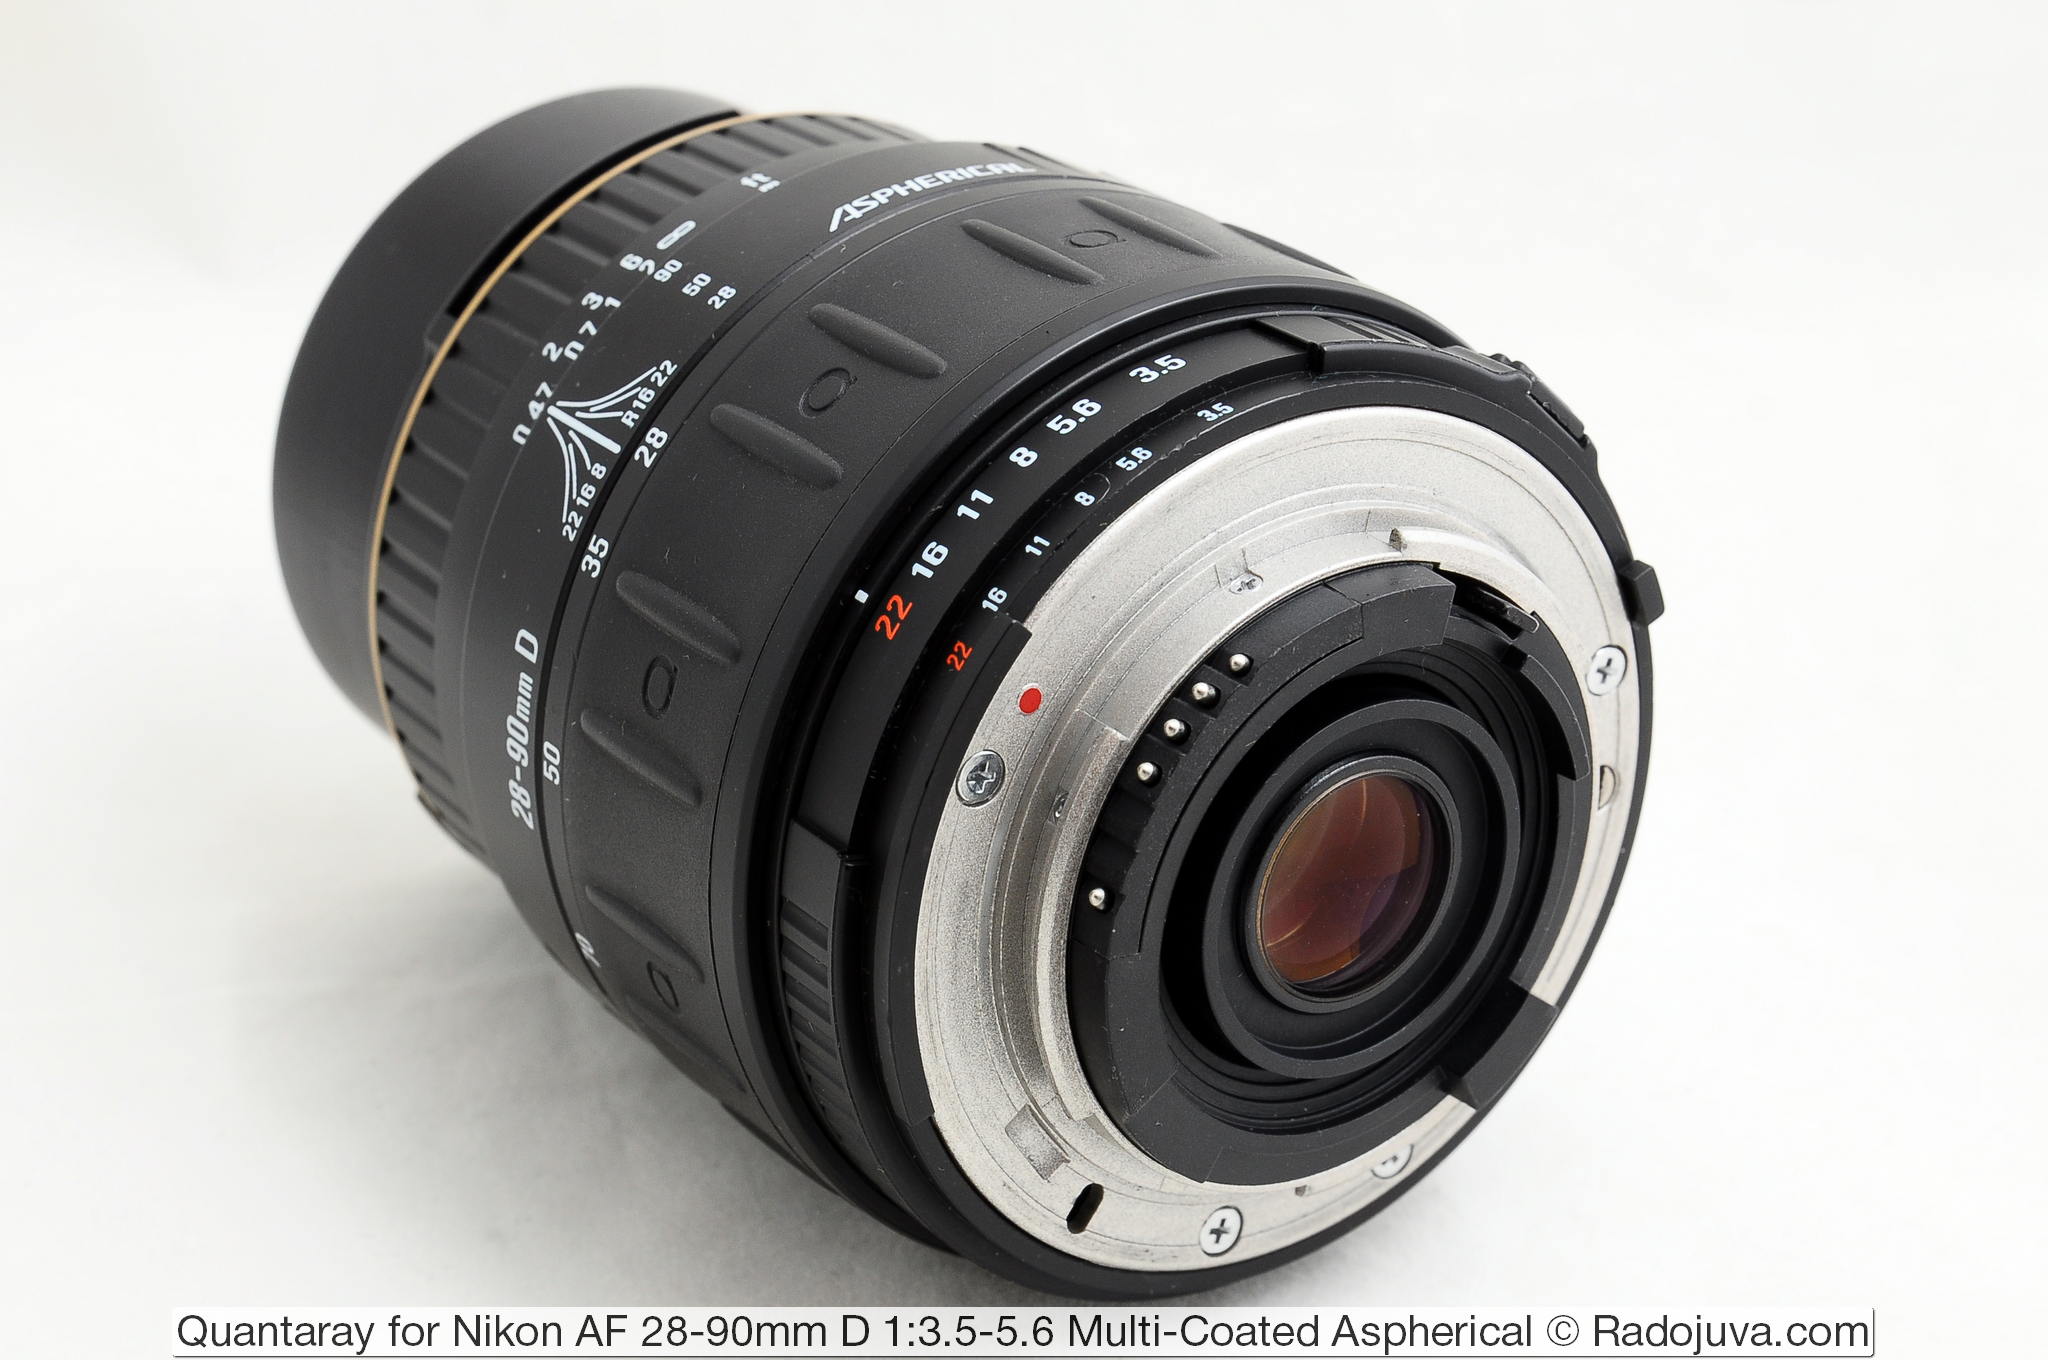 Quantaray for Nikon AF 28-90mm D 1:3.5-5.6 Multi-Coated Aspherical